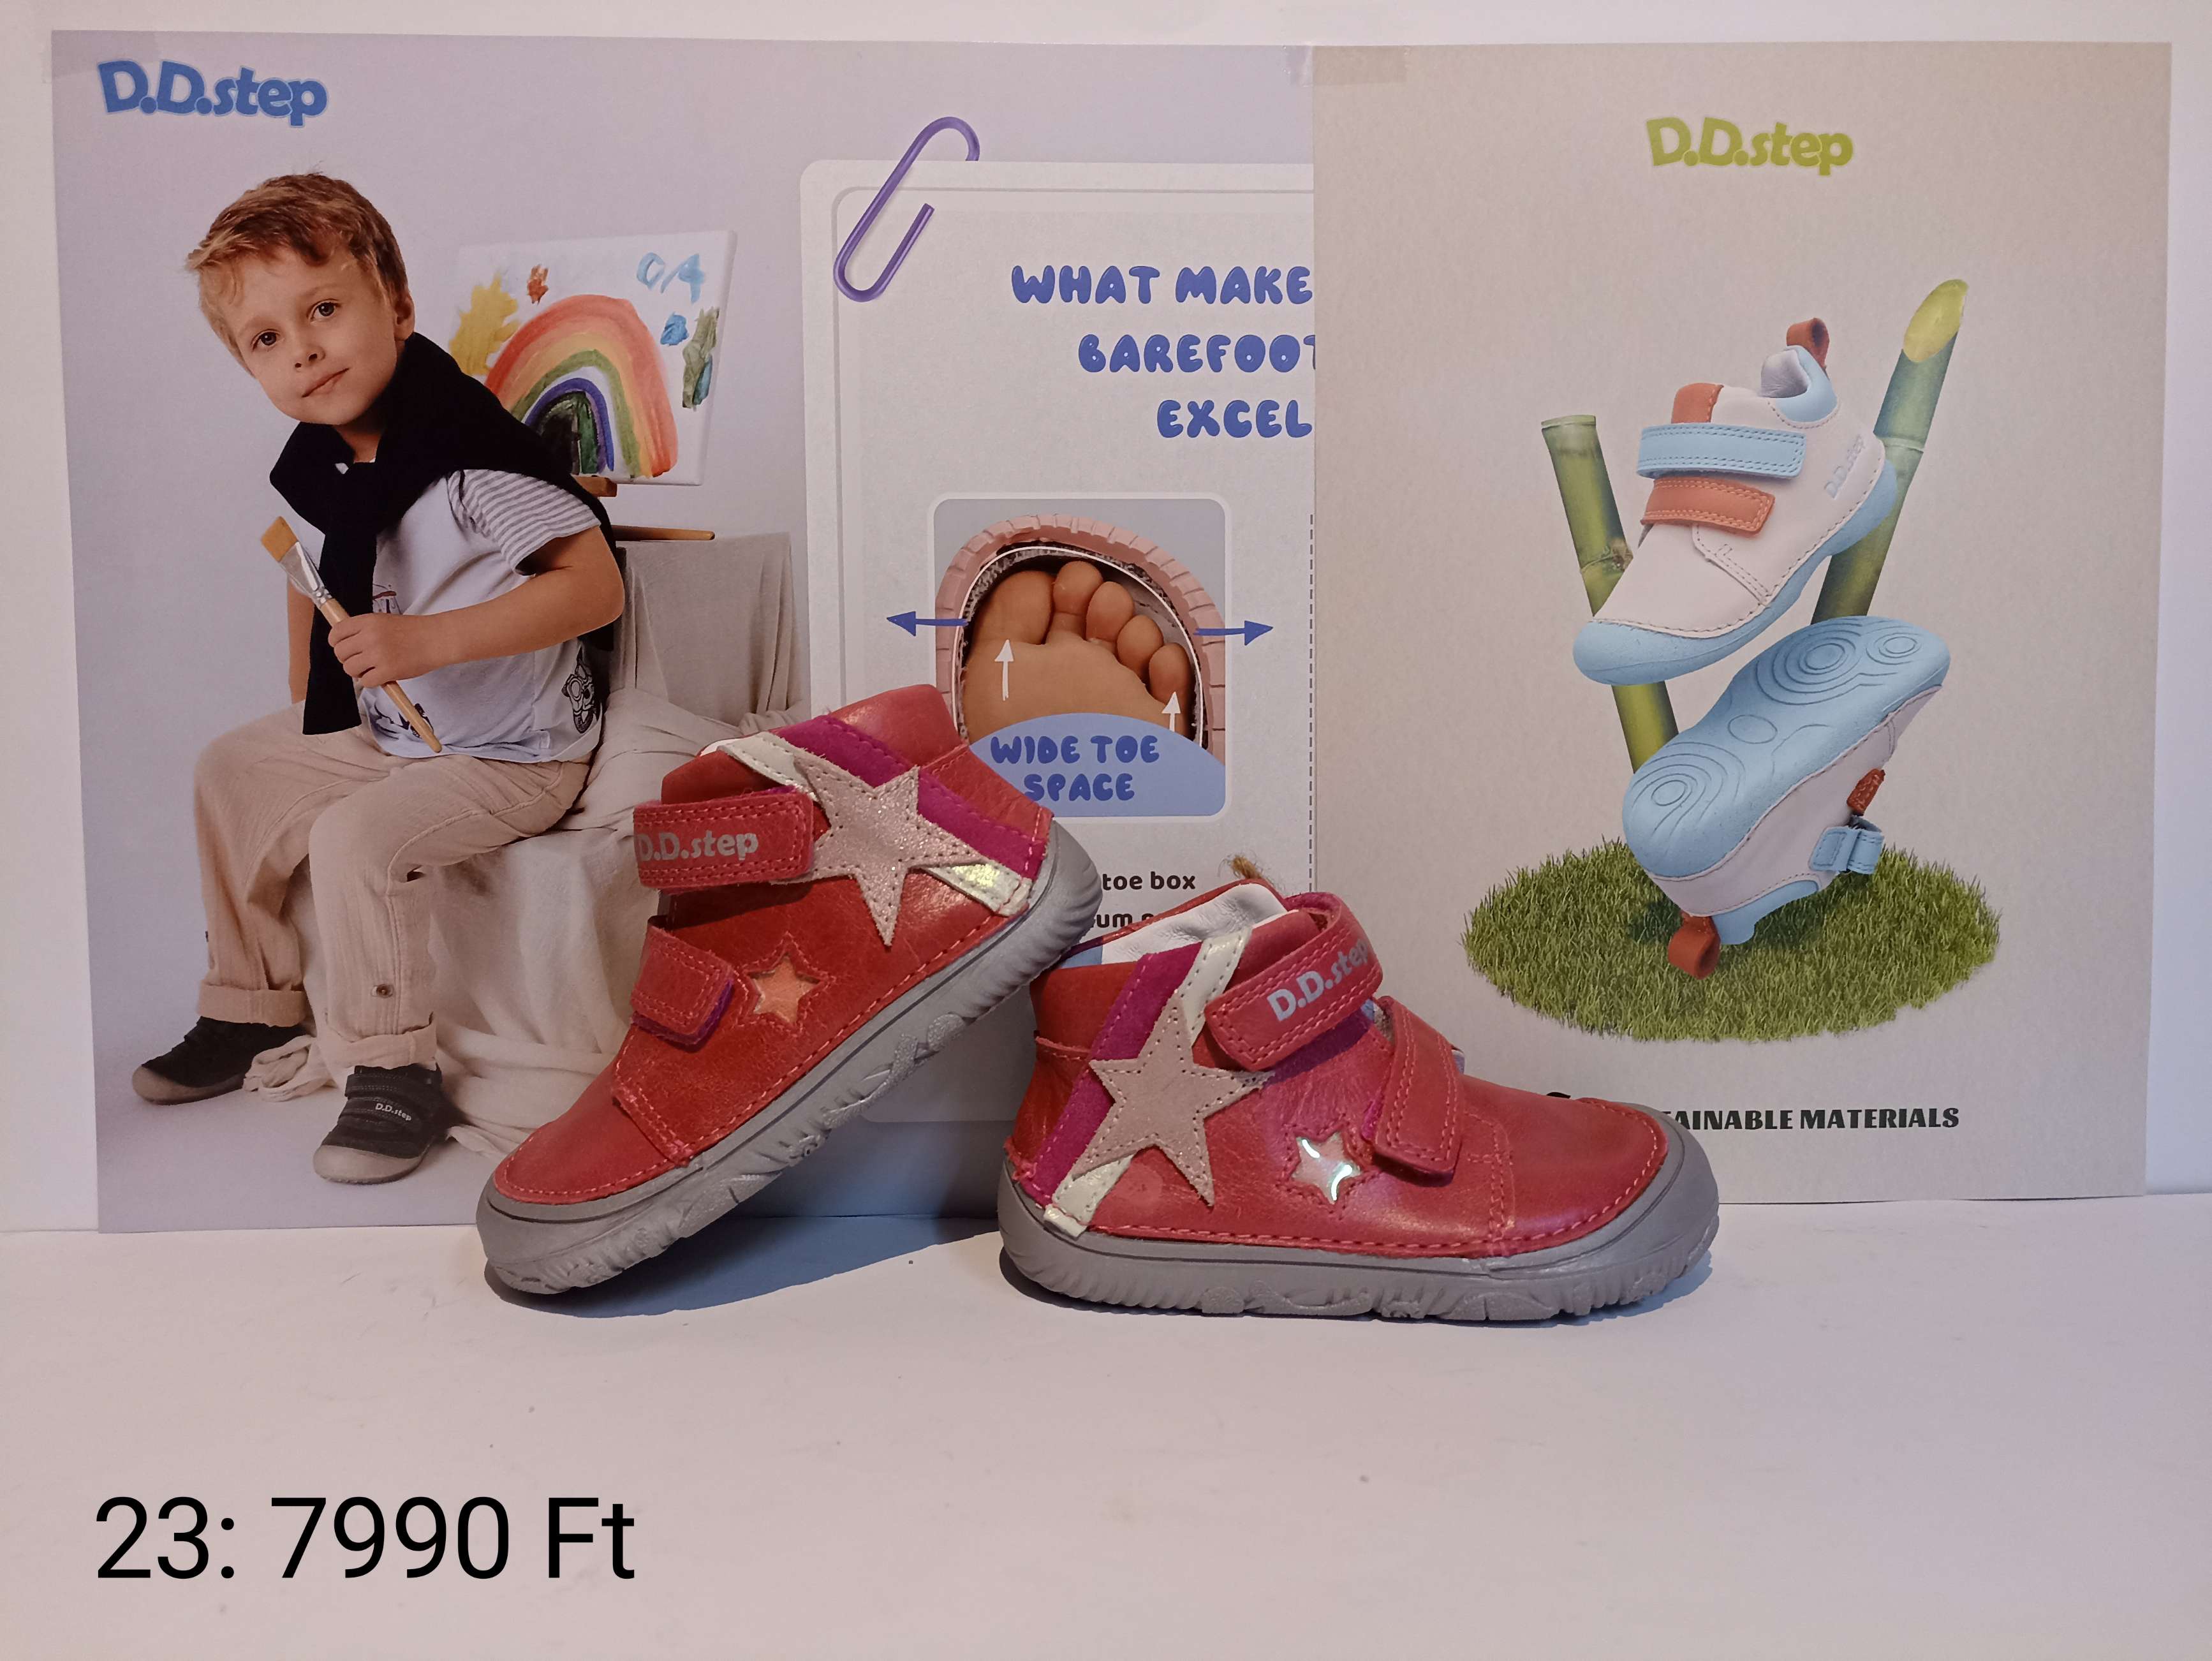 D.D.step gyermek bőrcipők